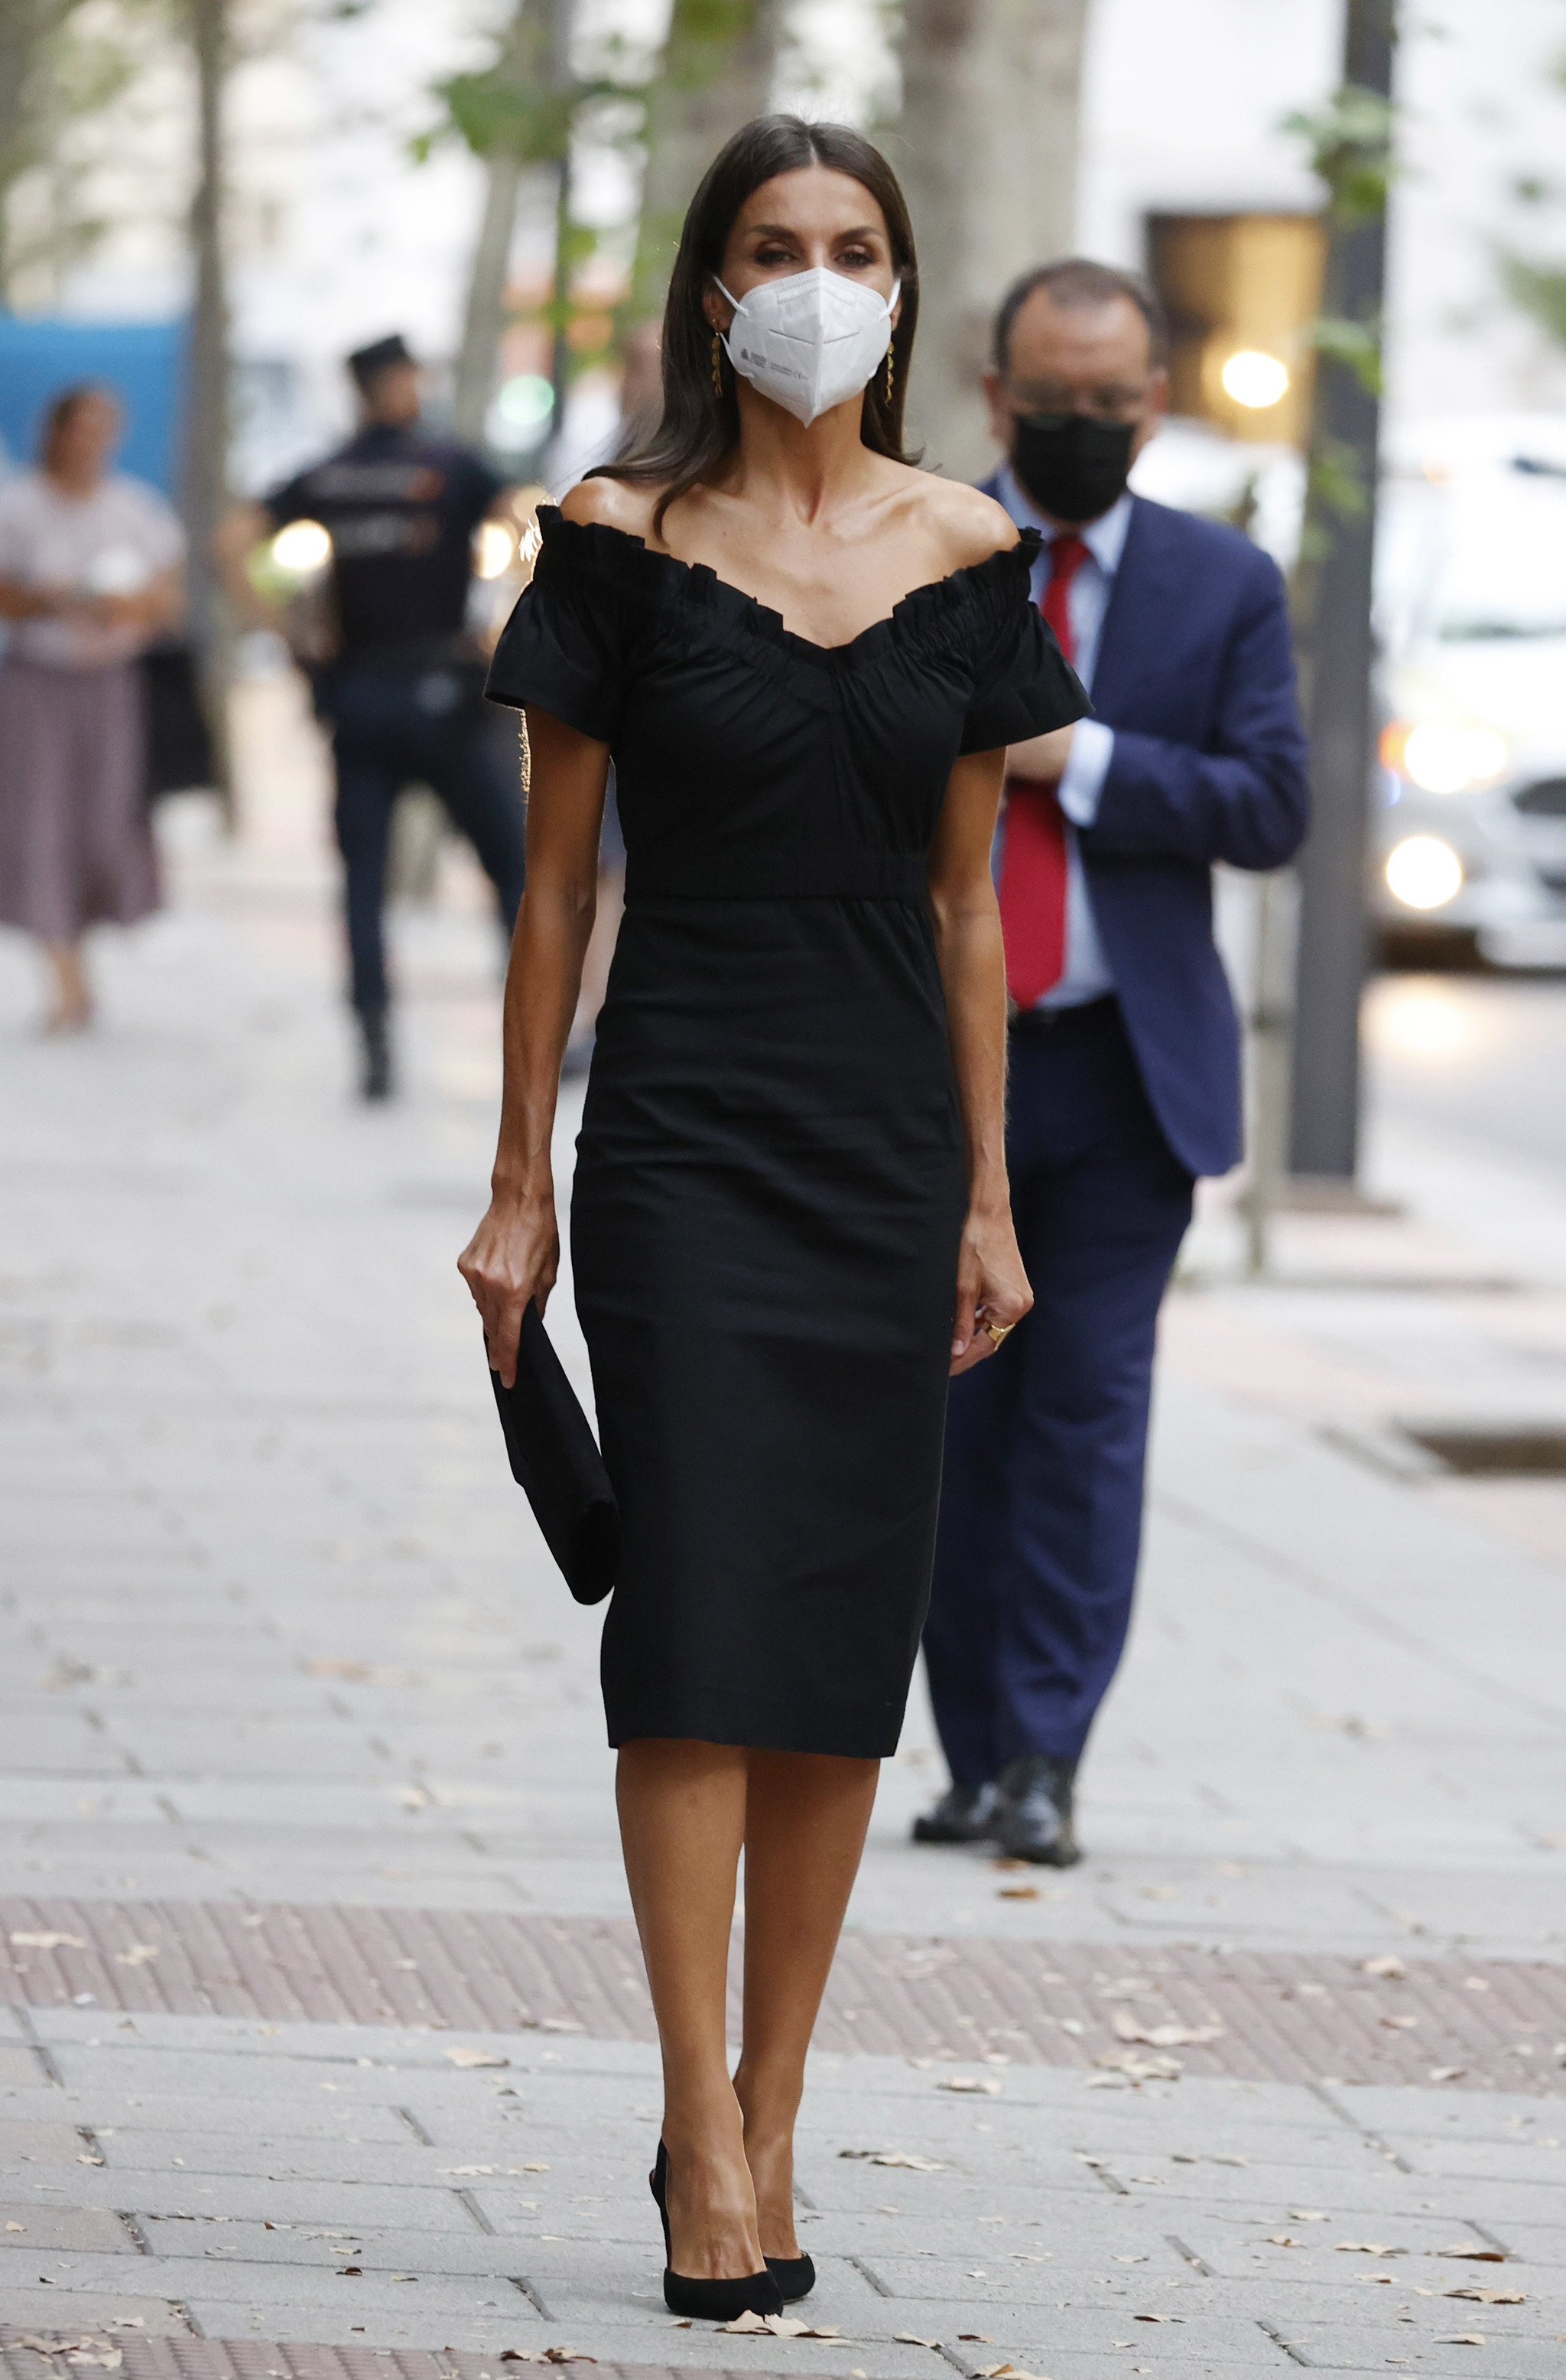 Proceso impuesto fantasma La reina Letizia en la rentrée con un vestido negro español y apostando por  el medio ambiente | Telva.com